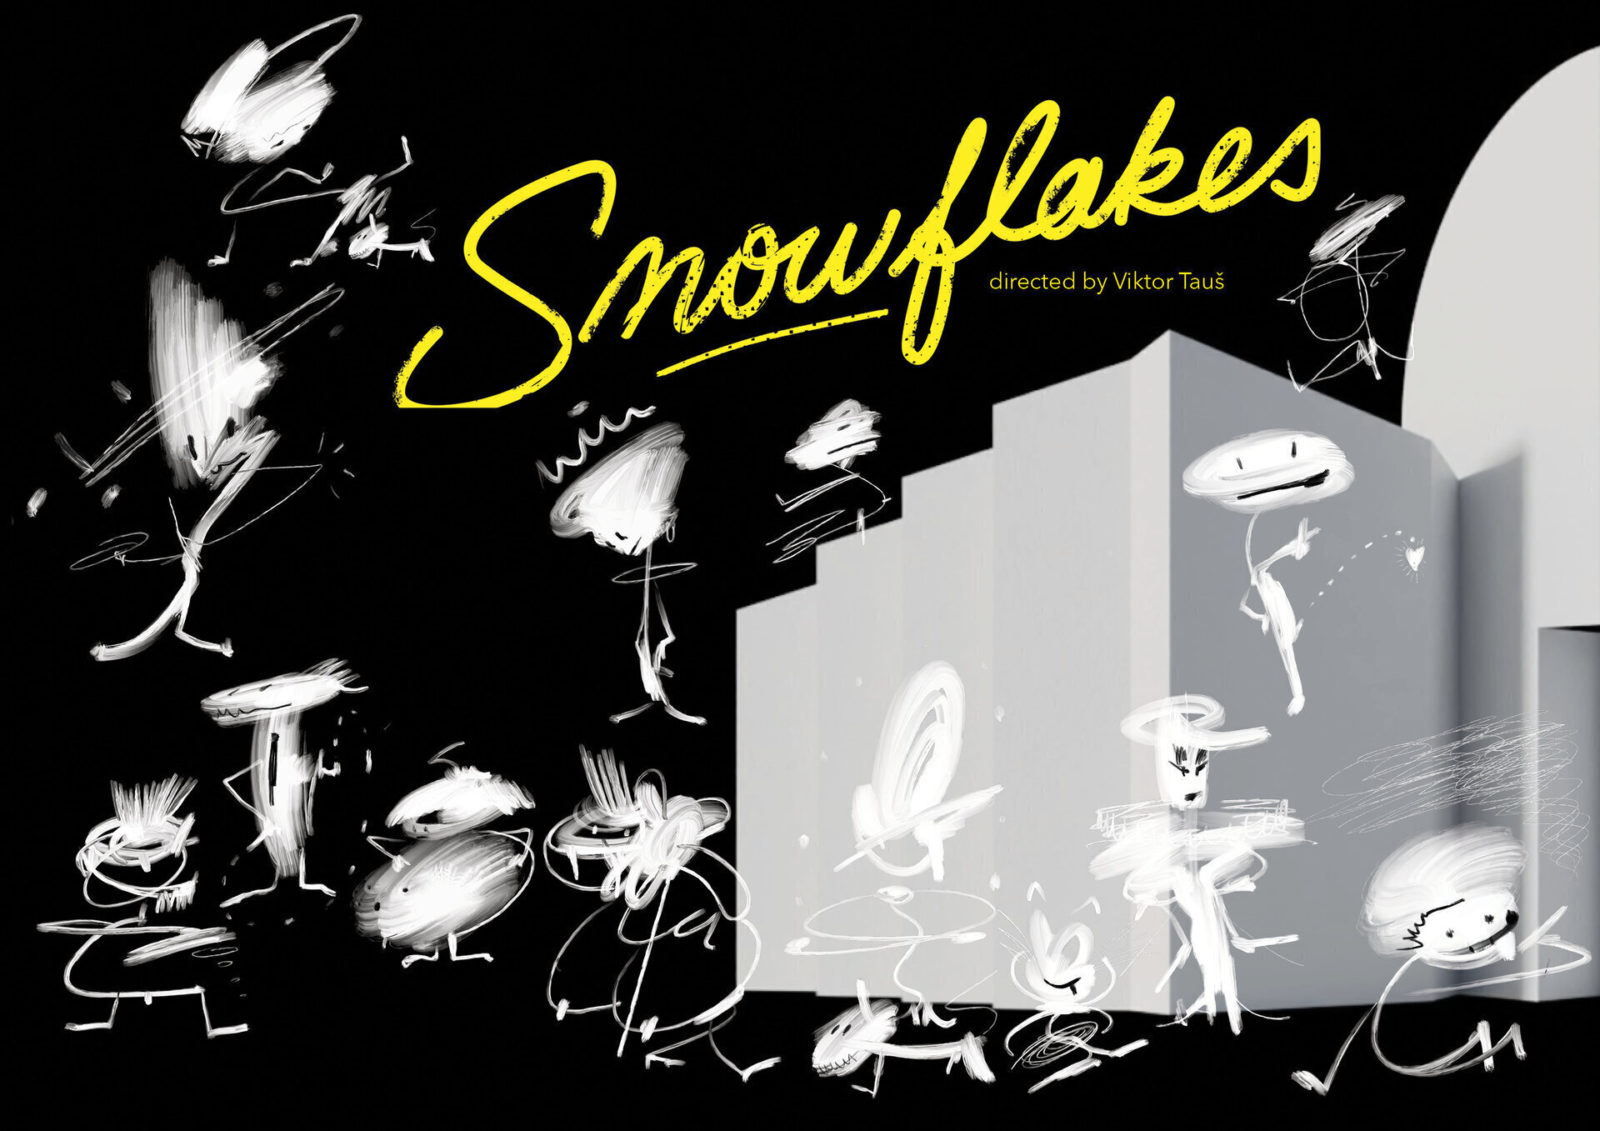 Snowflakes by Jan Kadlec